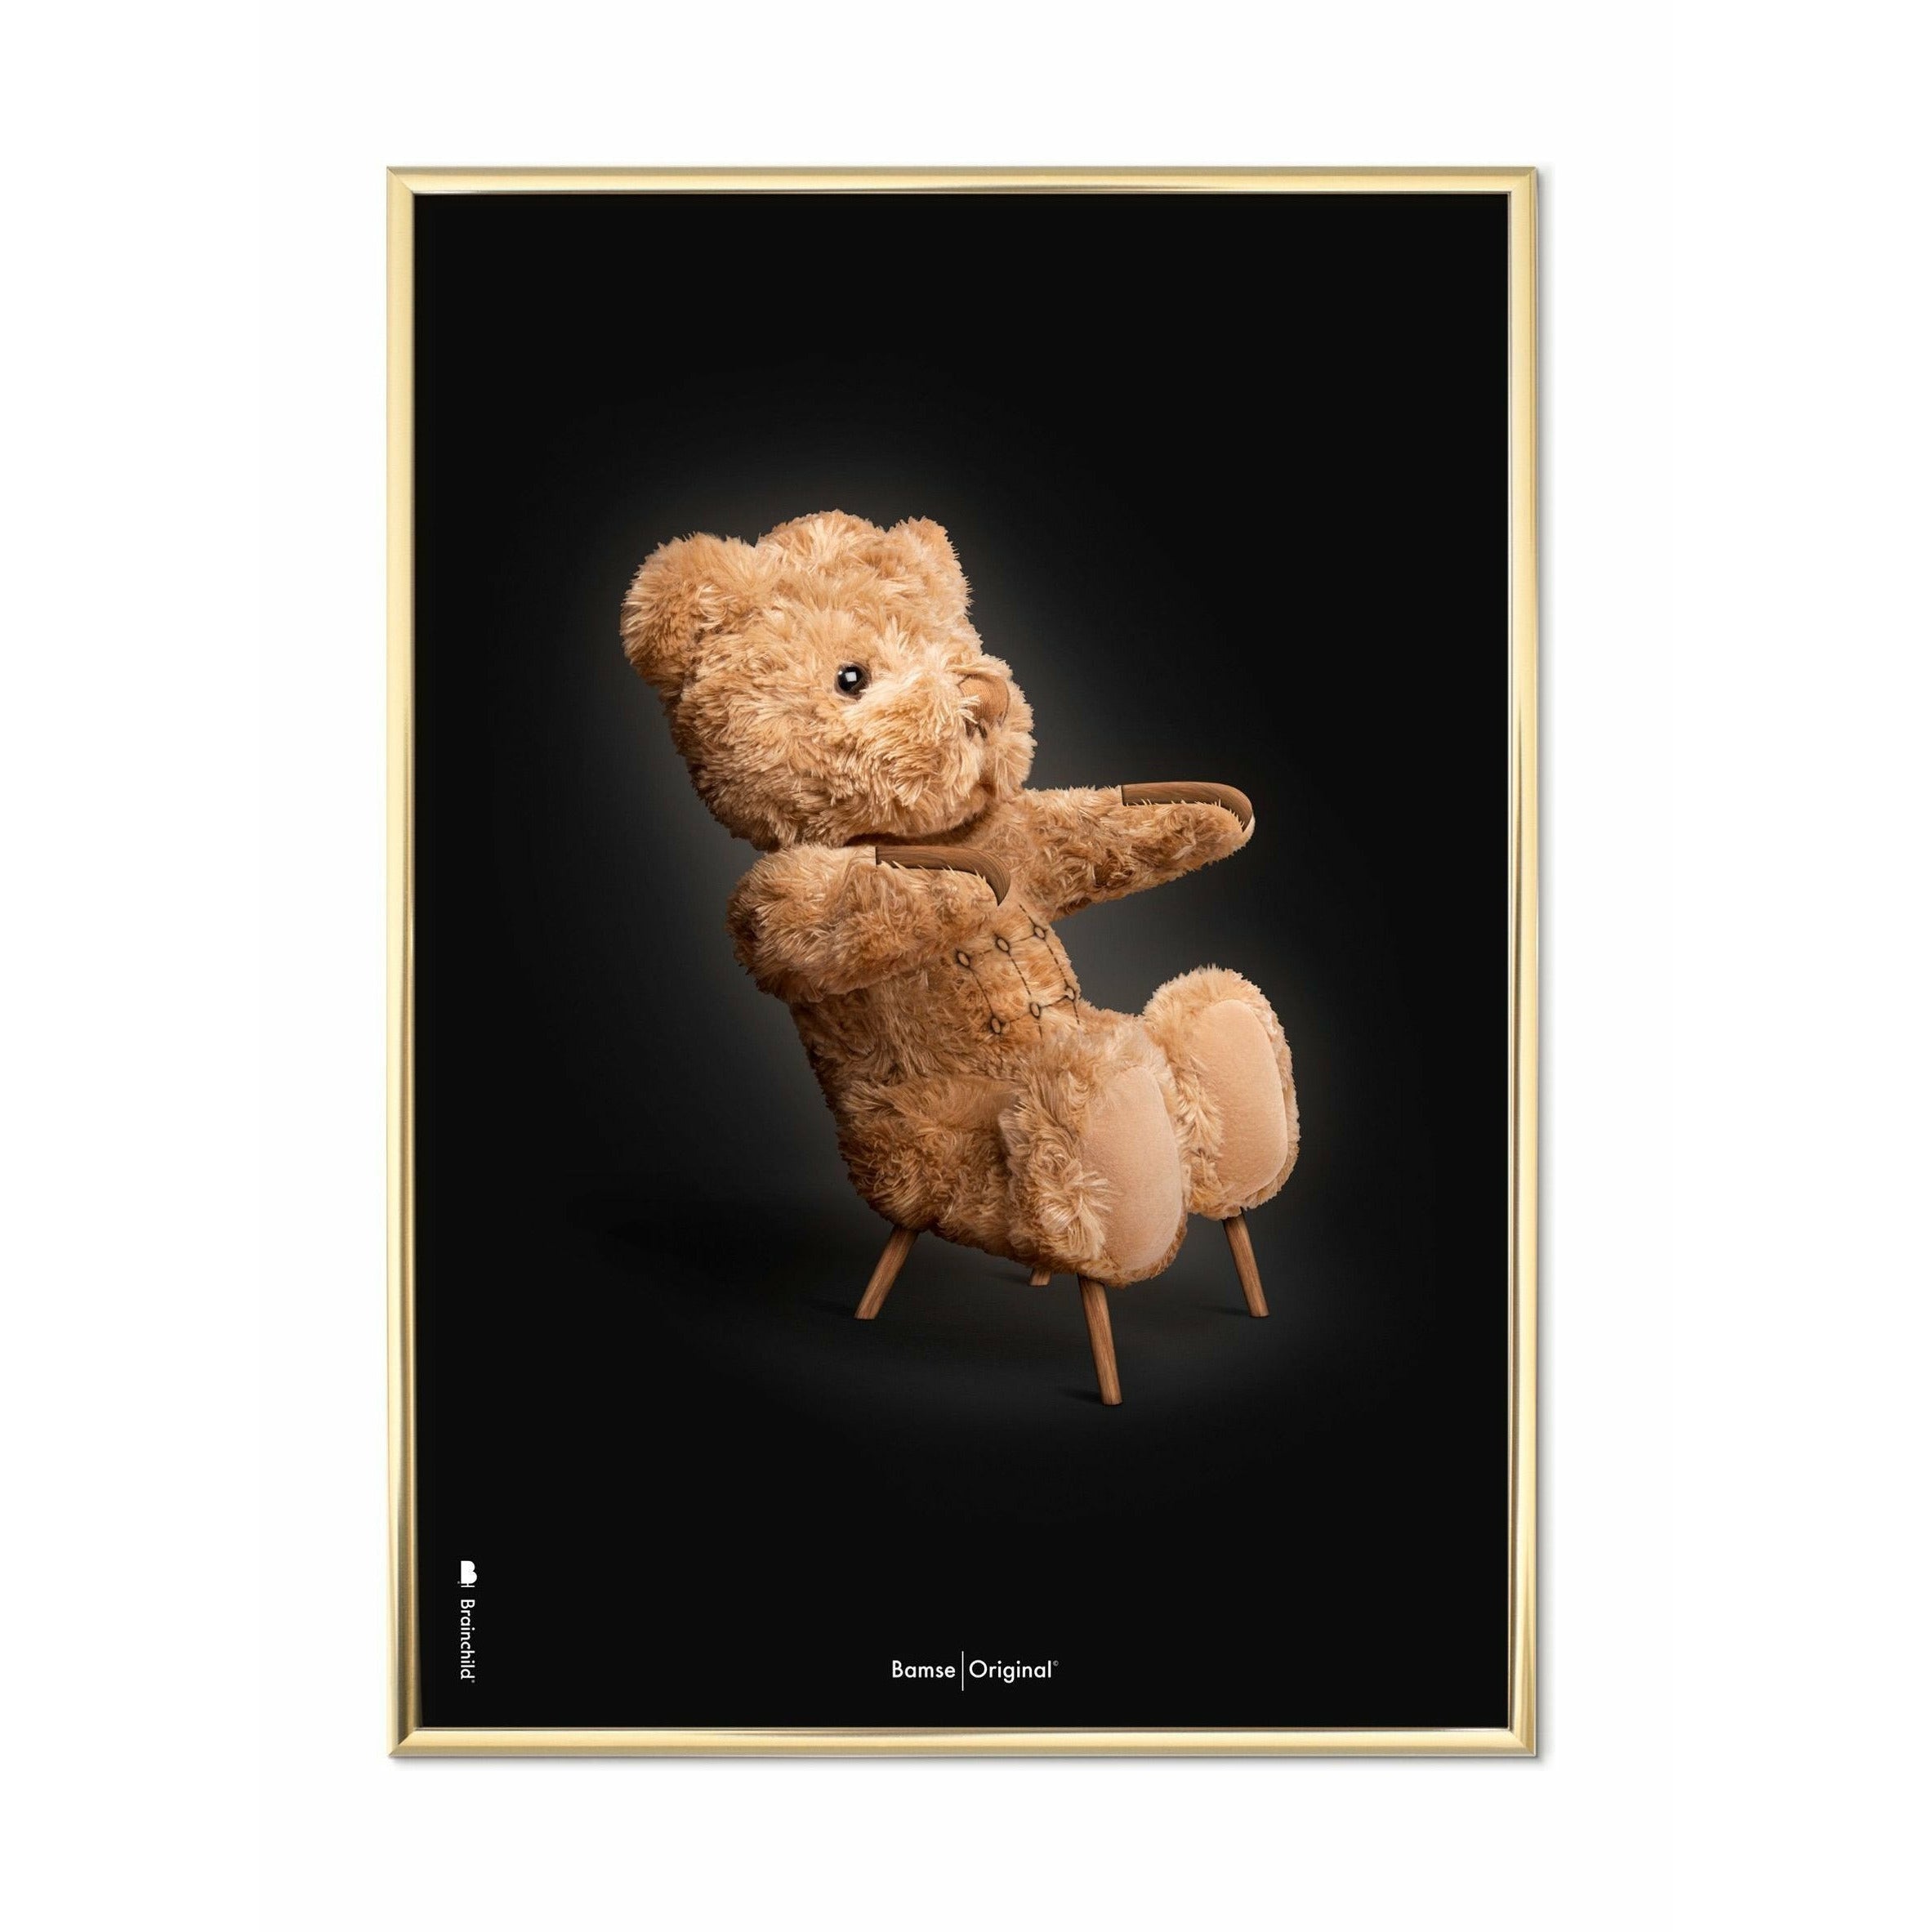 Brainchild Teddybär Classic Poster, messingfarbener Rahmen 30x40 Cm, schwarzer Hintergrund